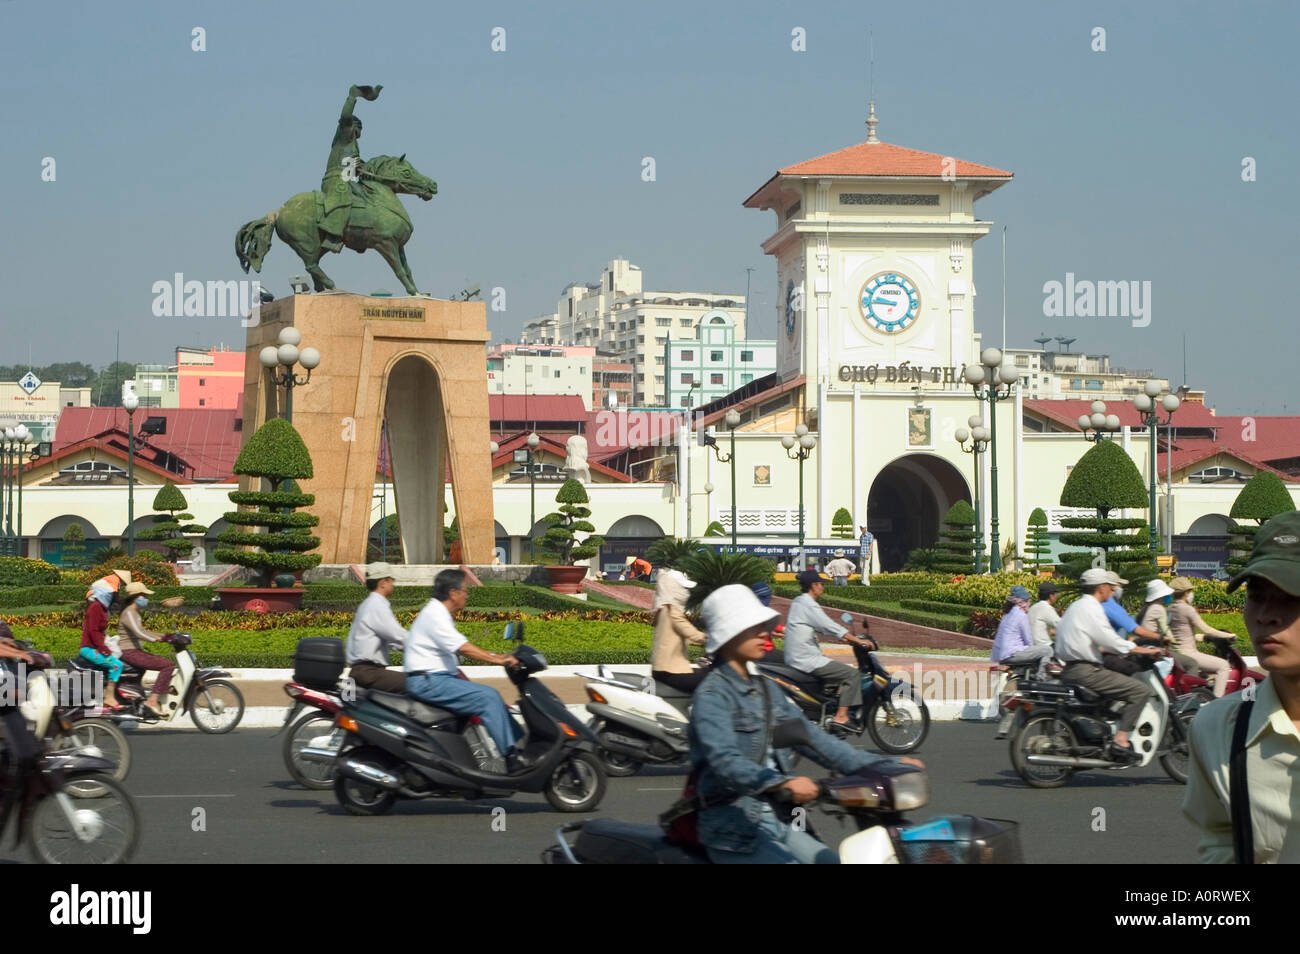 Tran Nguyen statue Han Ben merci du marché publique de la ville Ho Chi Minh City Saigon Vietnam Asie Asie du sud-est Banque D'Images